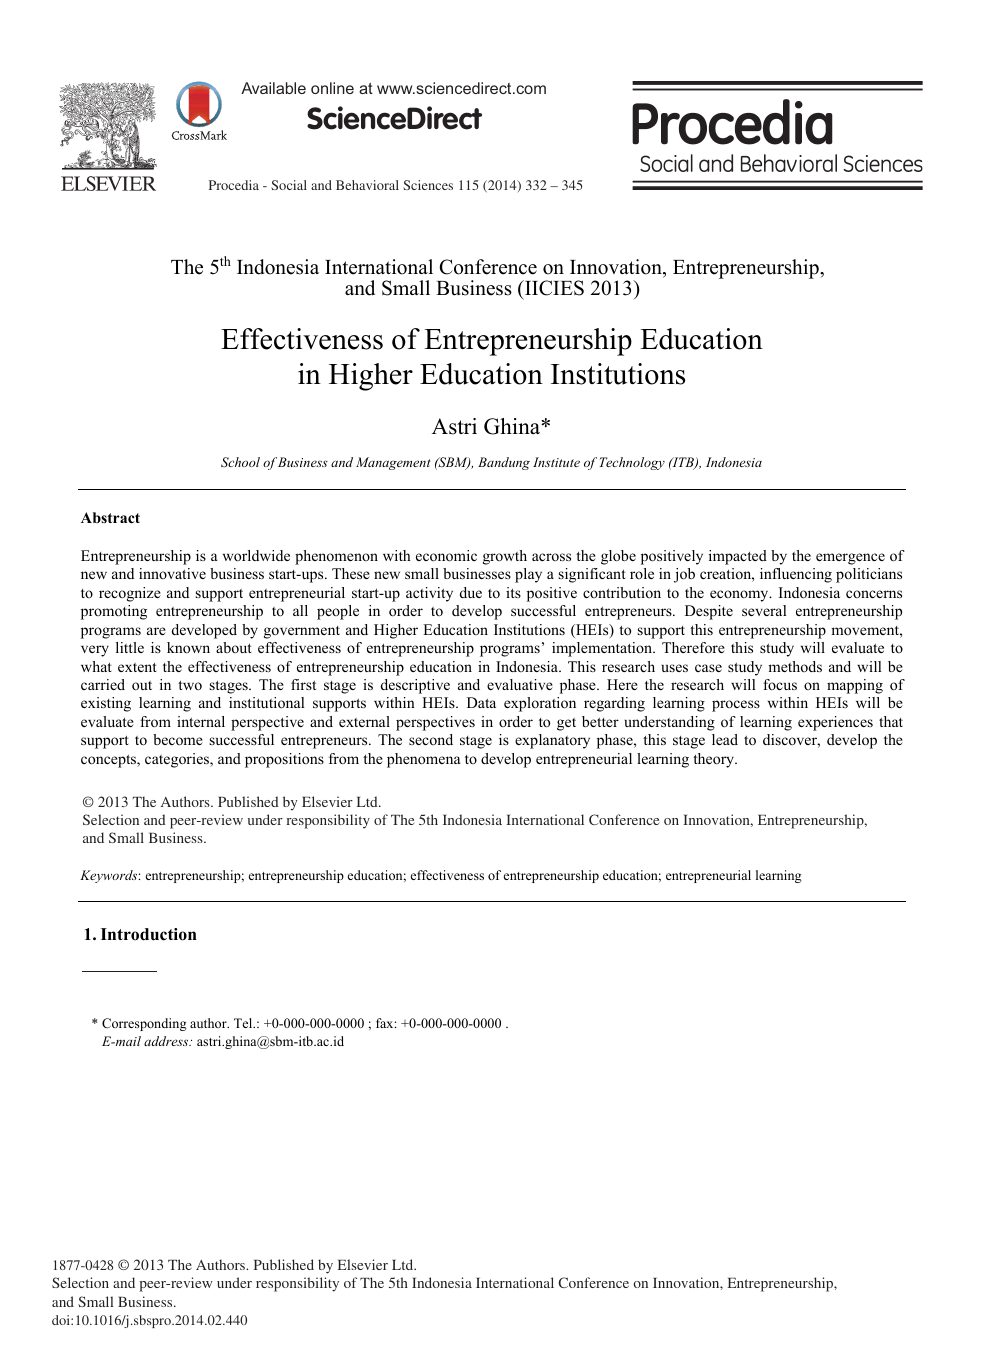 Effectiveness Of Entrepreneurship Education In Higher Education